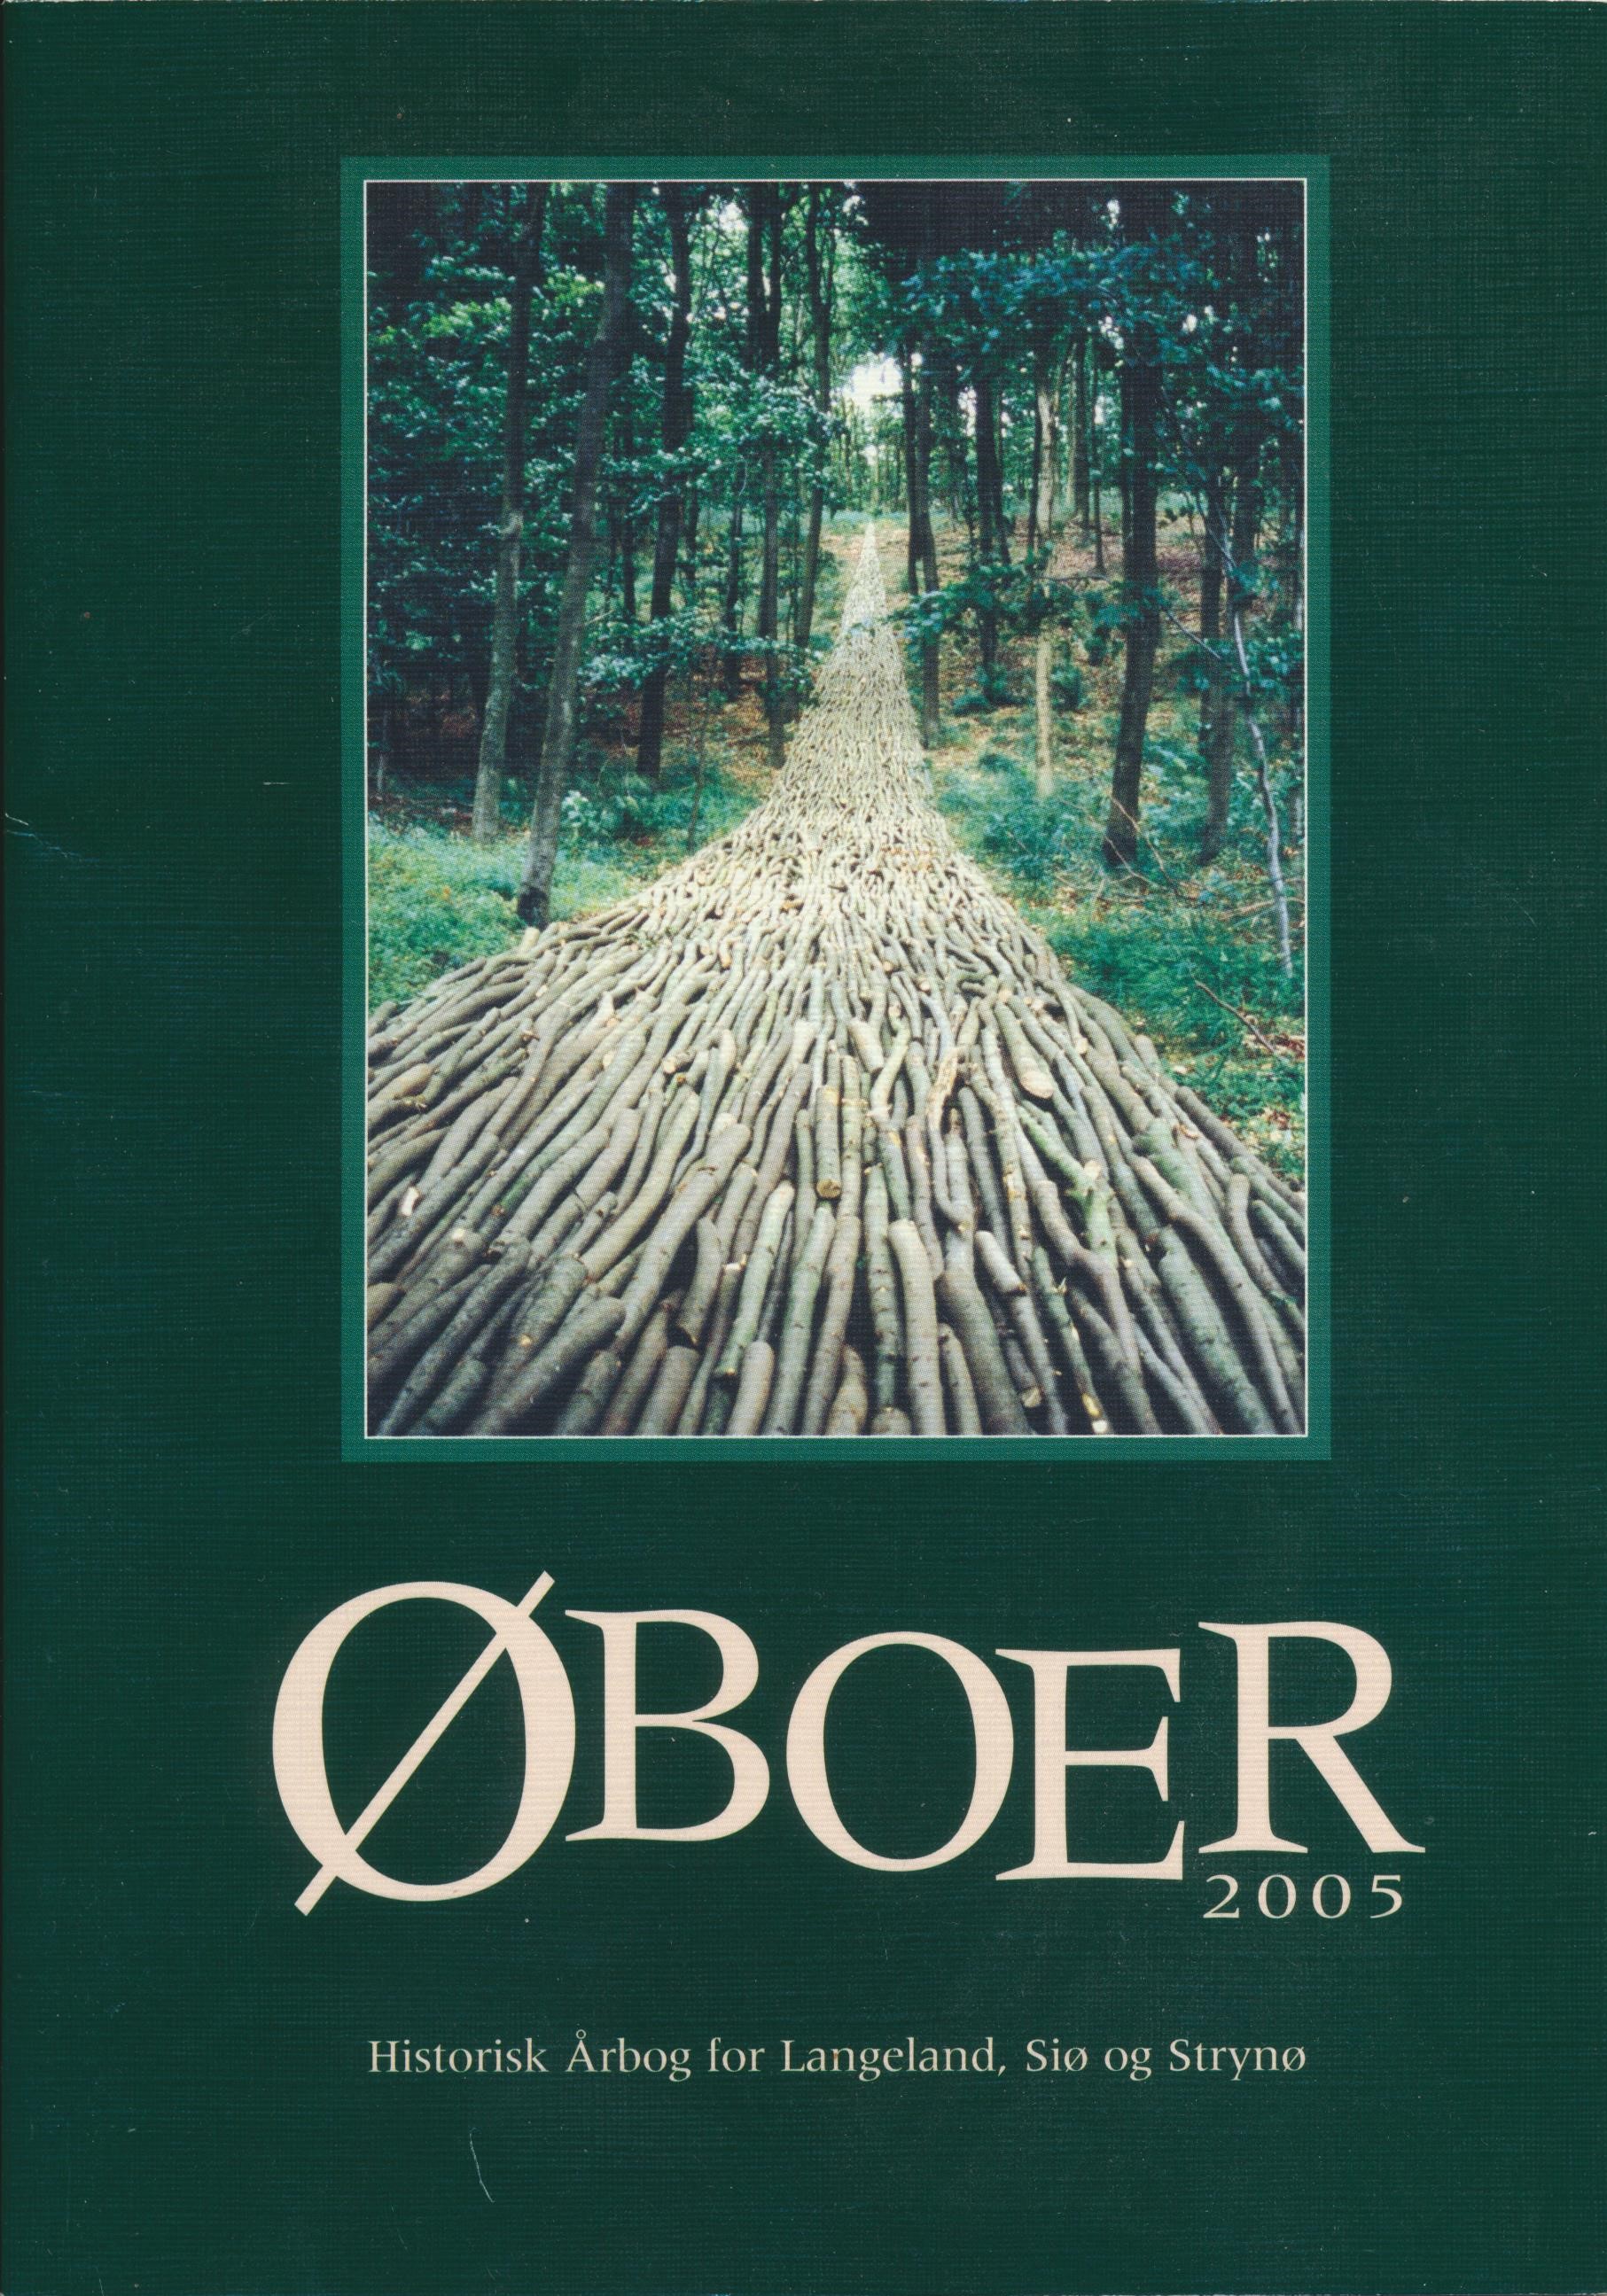 Oboer 2005